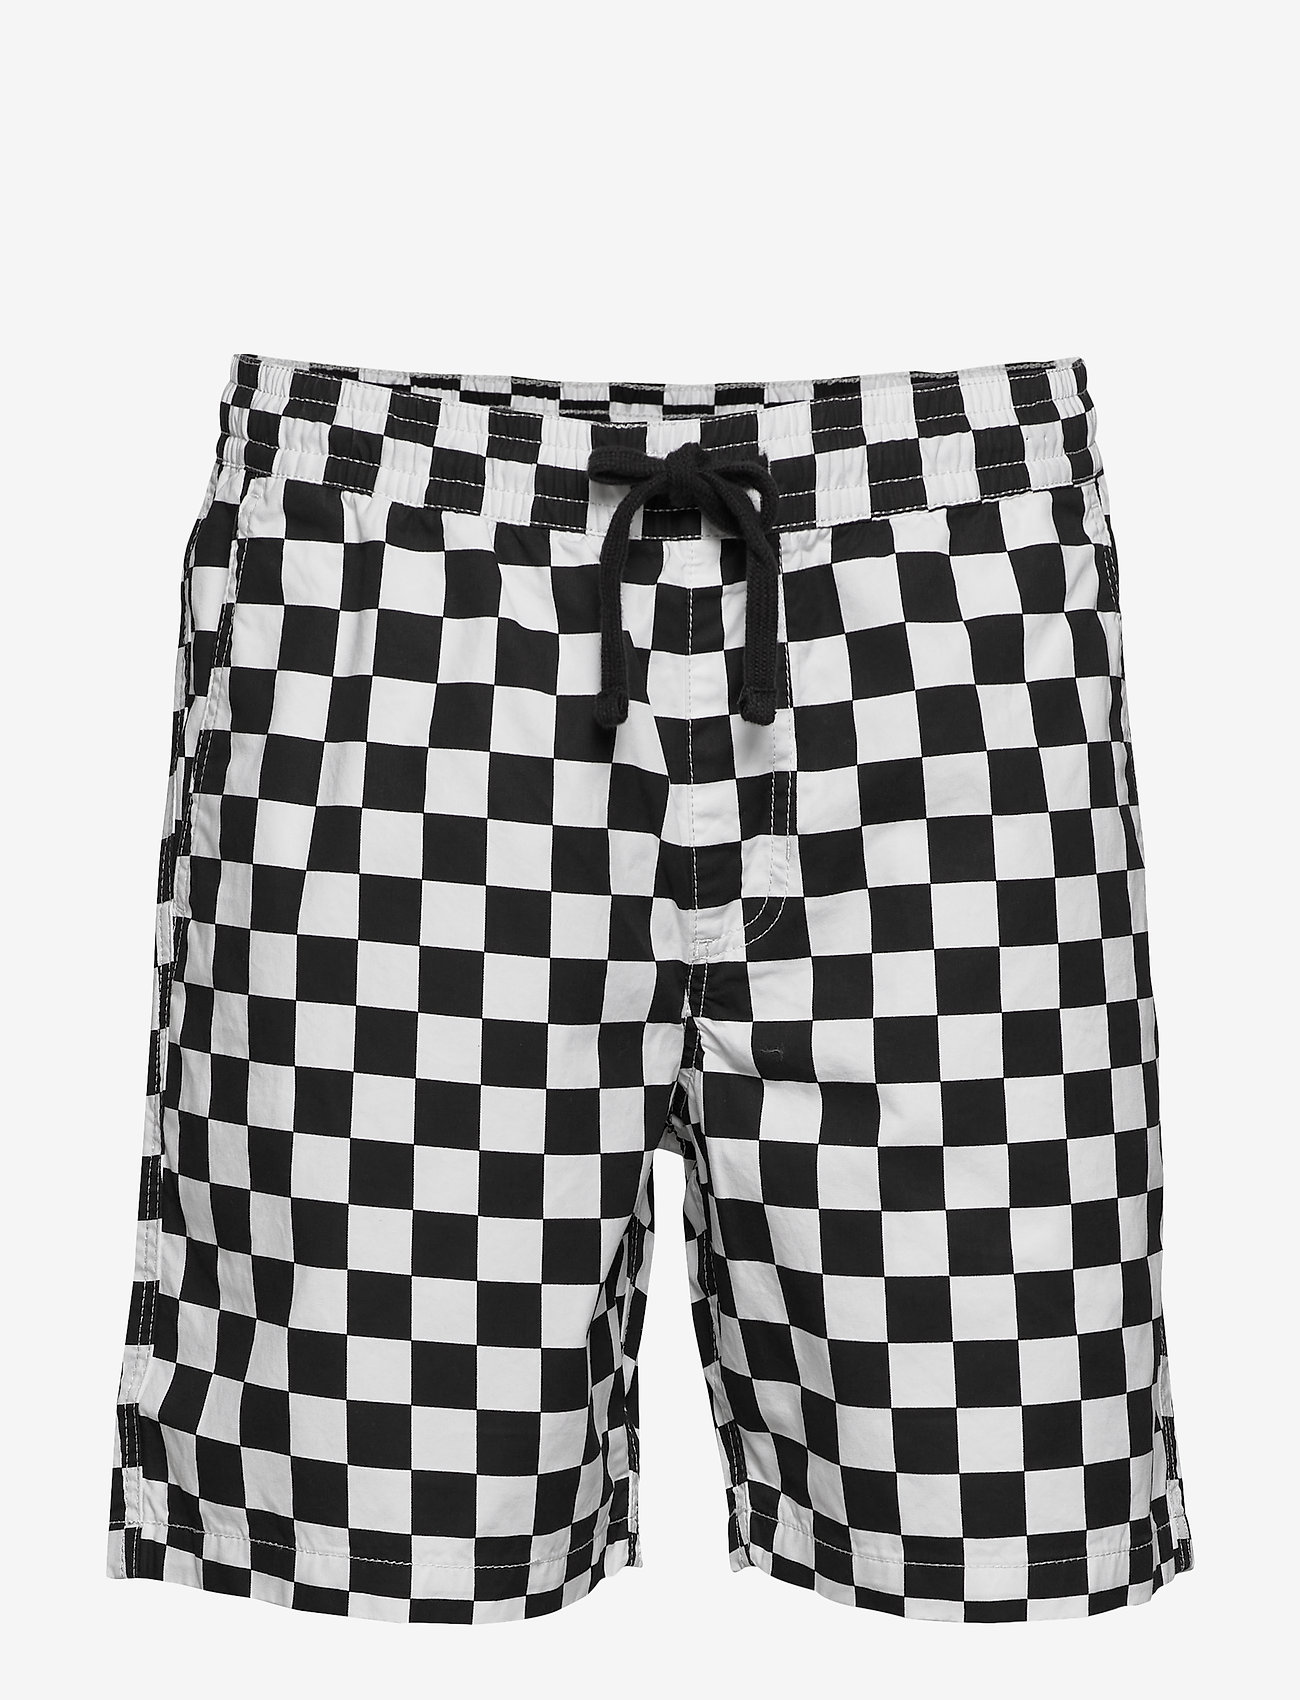 checkered vans shorts